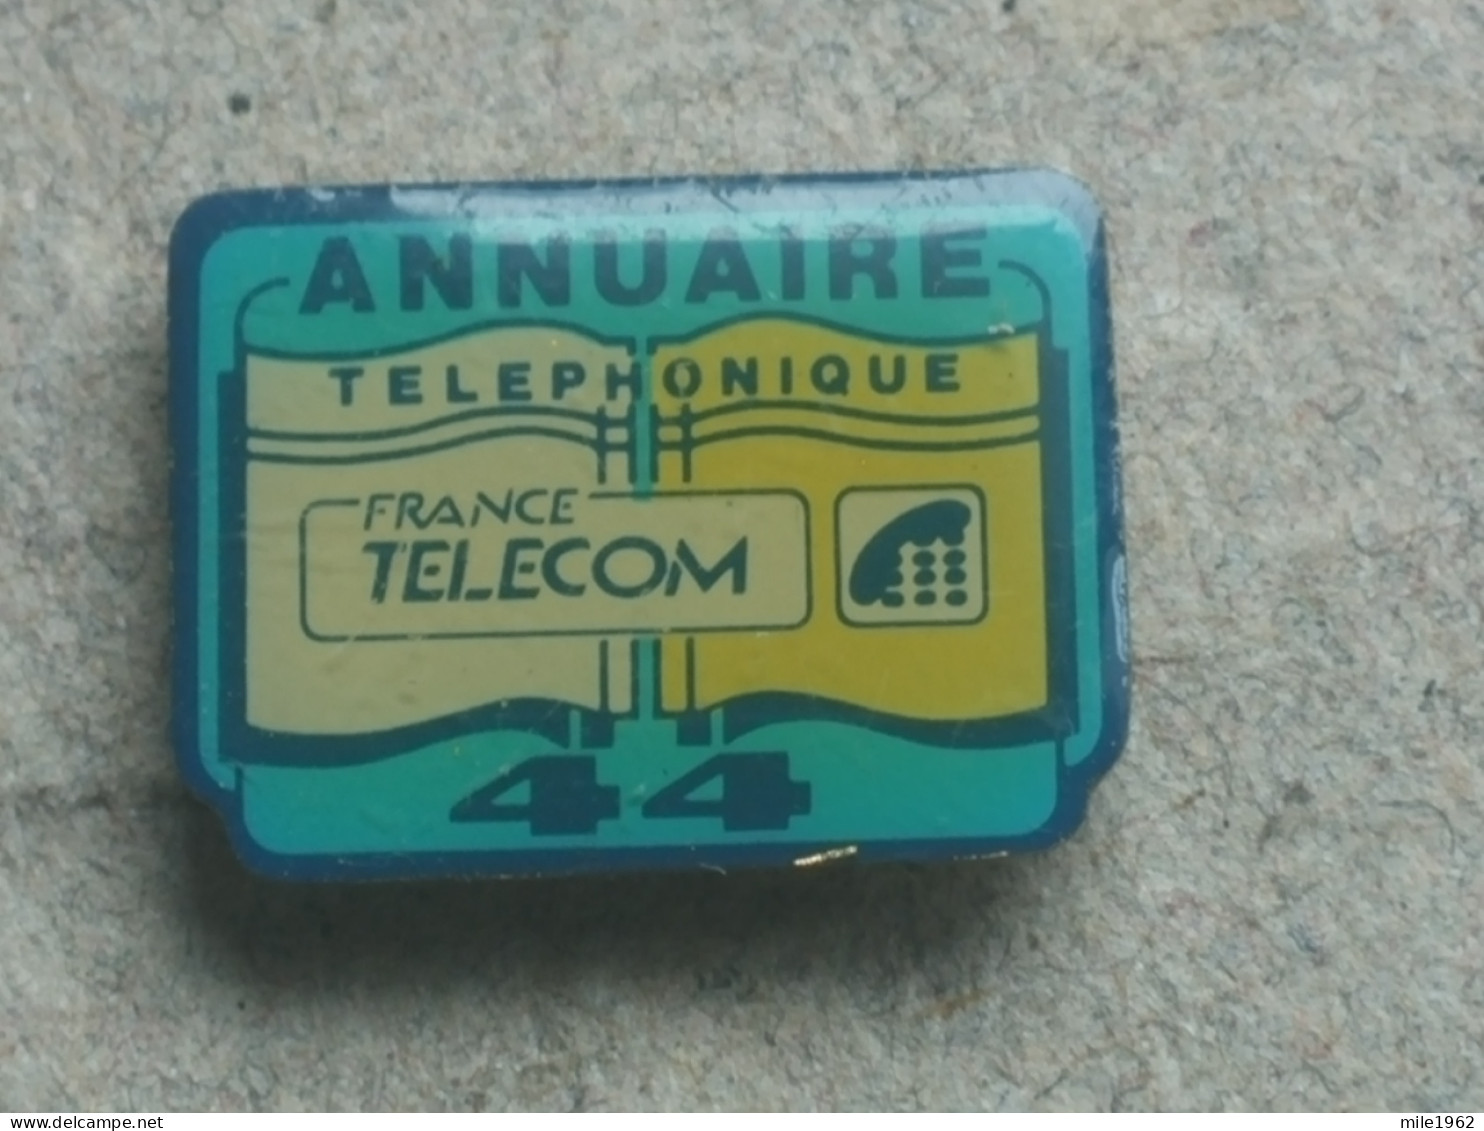 Stir 3 - TELEPHONE, PHONE, FRANCE TELECOM - France Telecom